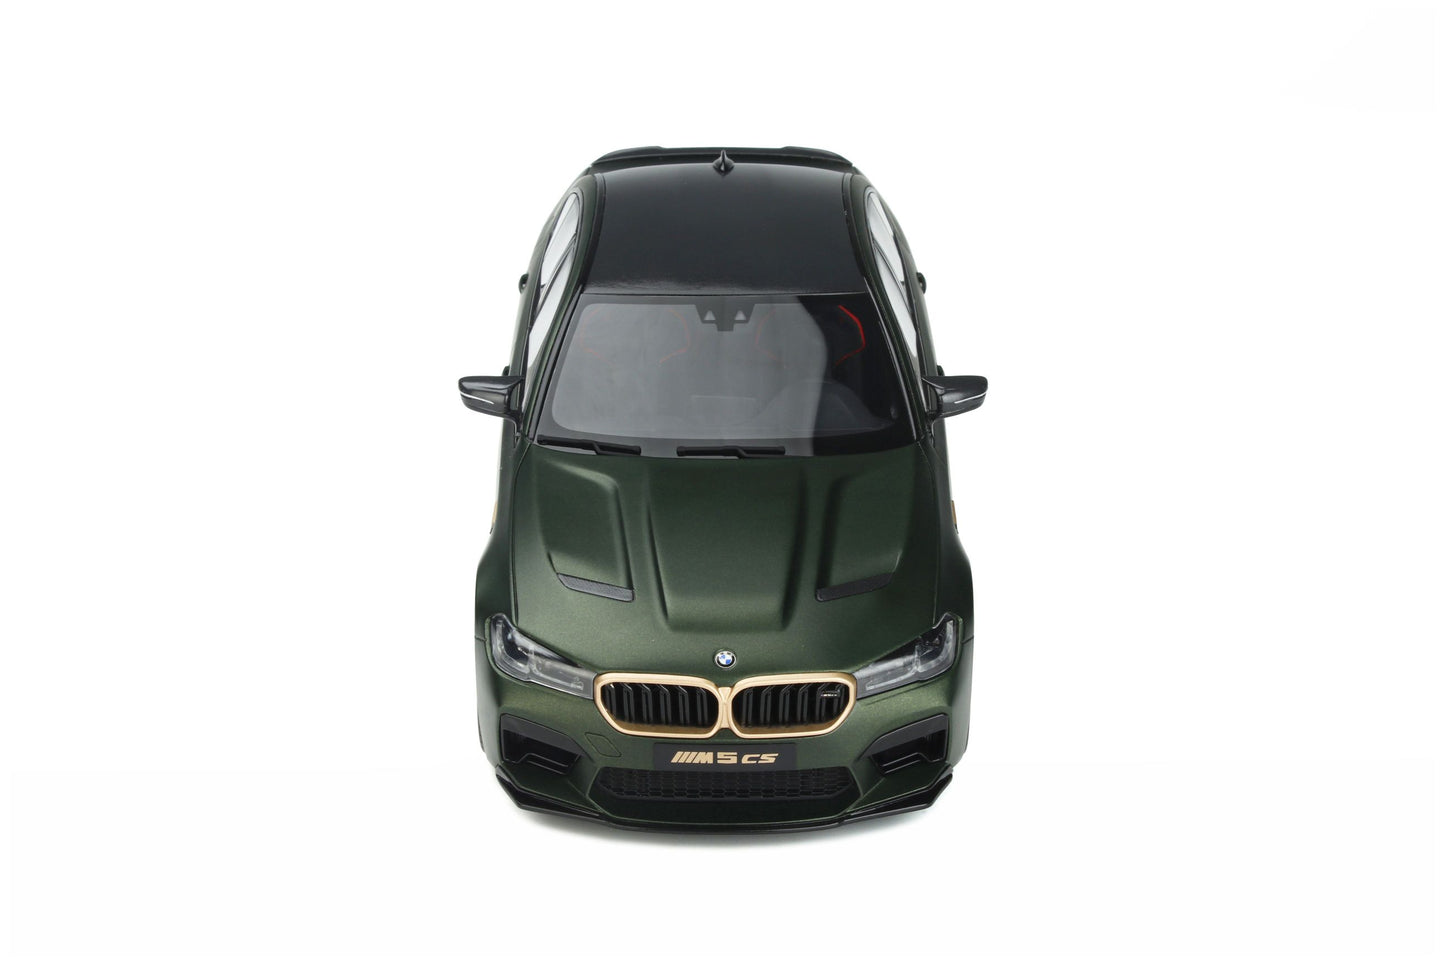 GT Spirit - BMW M5 CS (F90) (Frozen Deep Green Metallic) 1:18 Scale Model Car